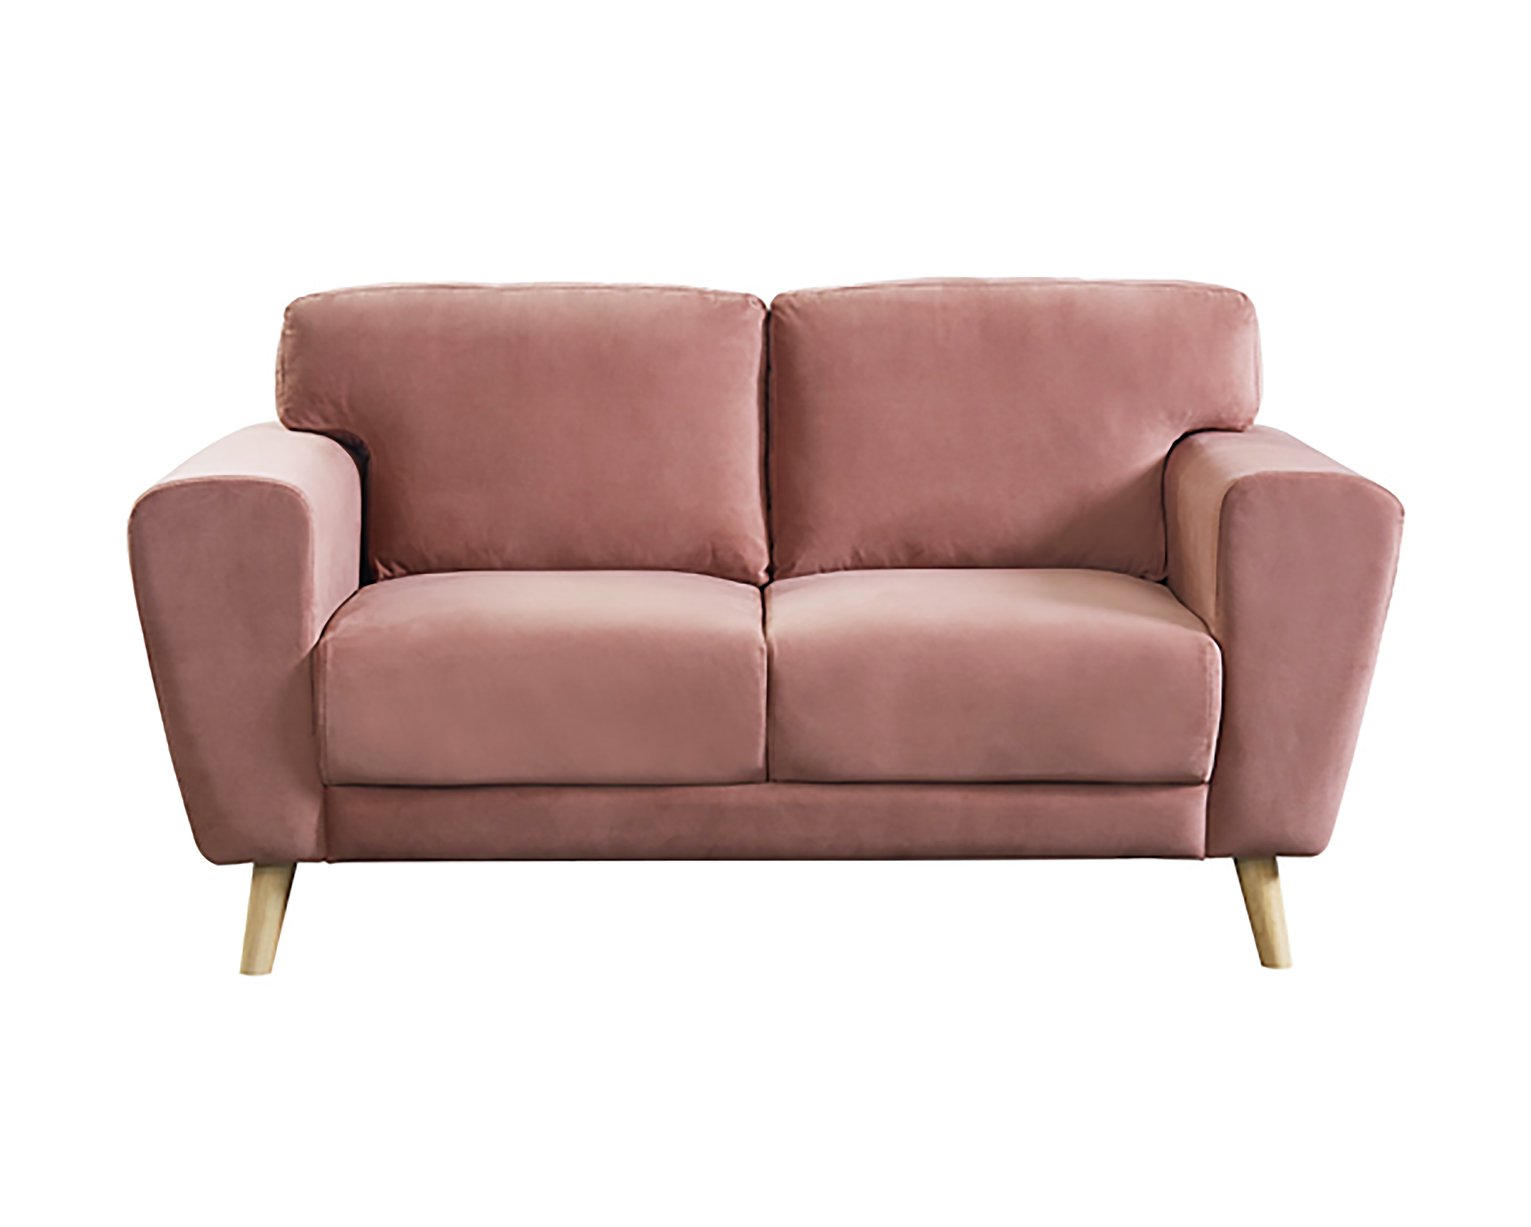 Habitat Snuggle 2 Seater Velvet Sofa Review